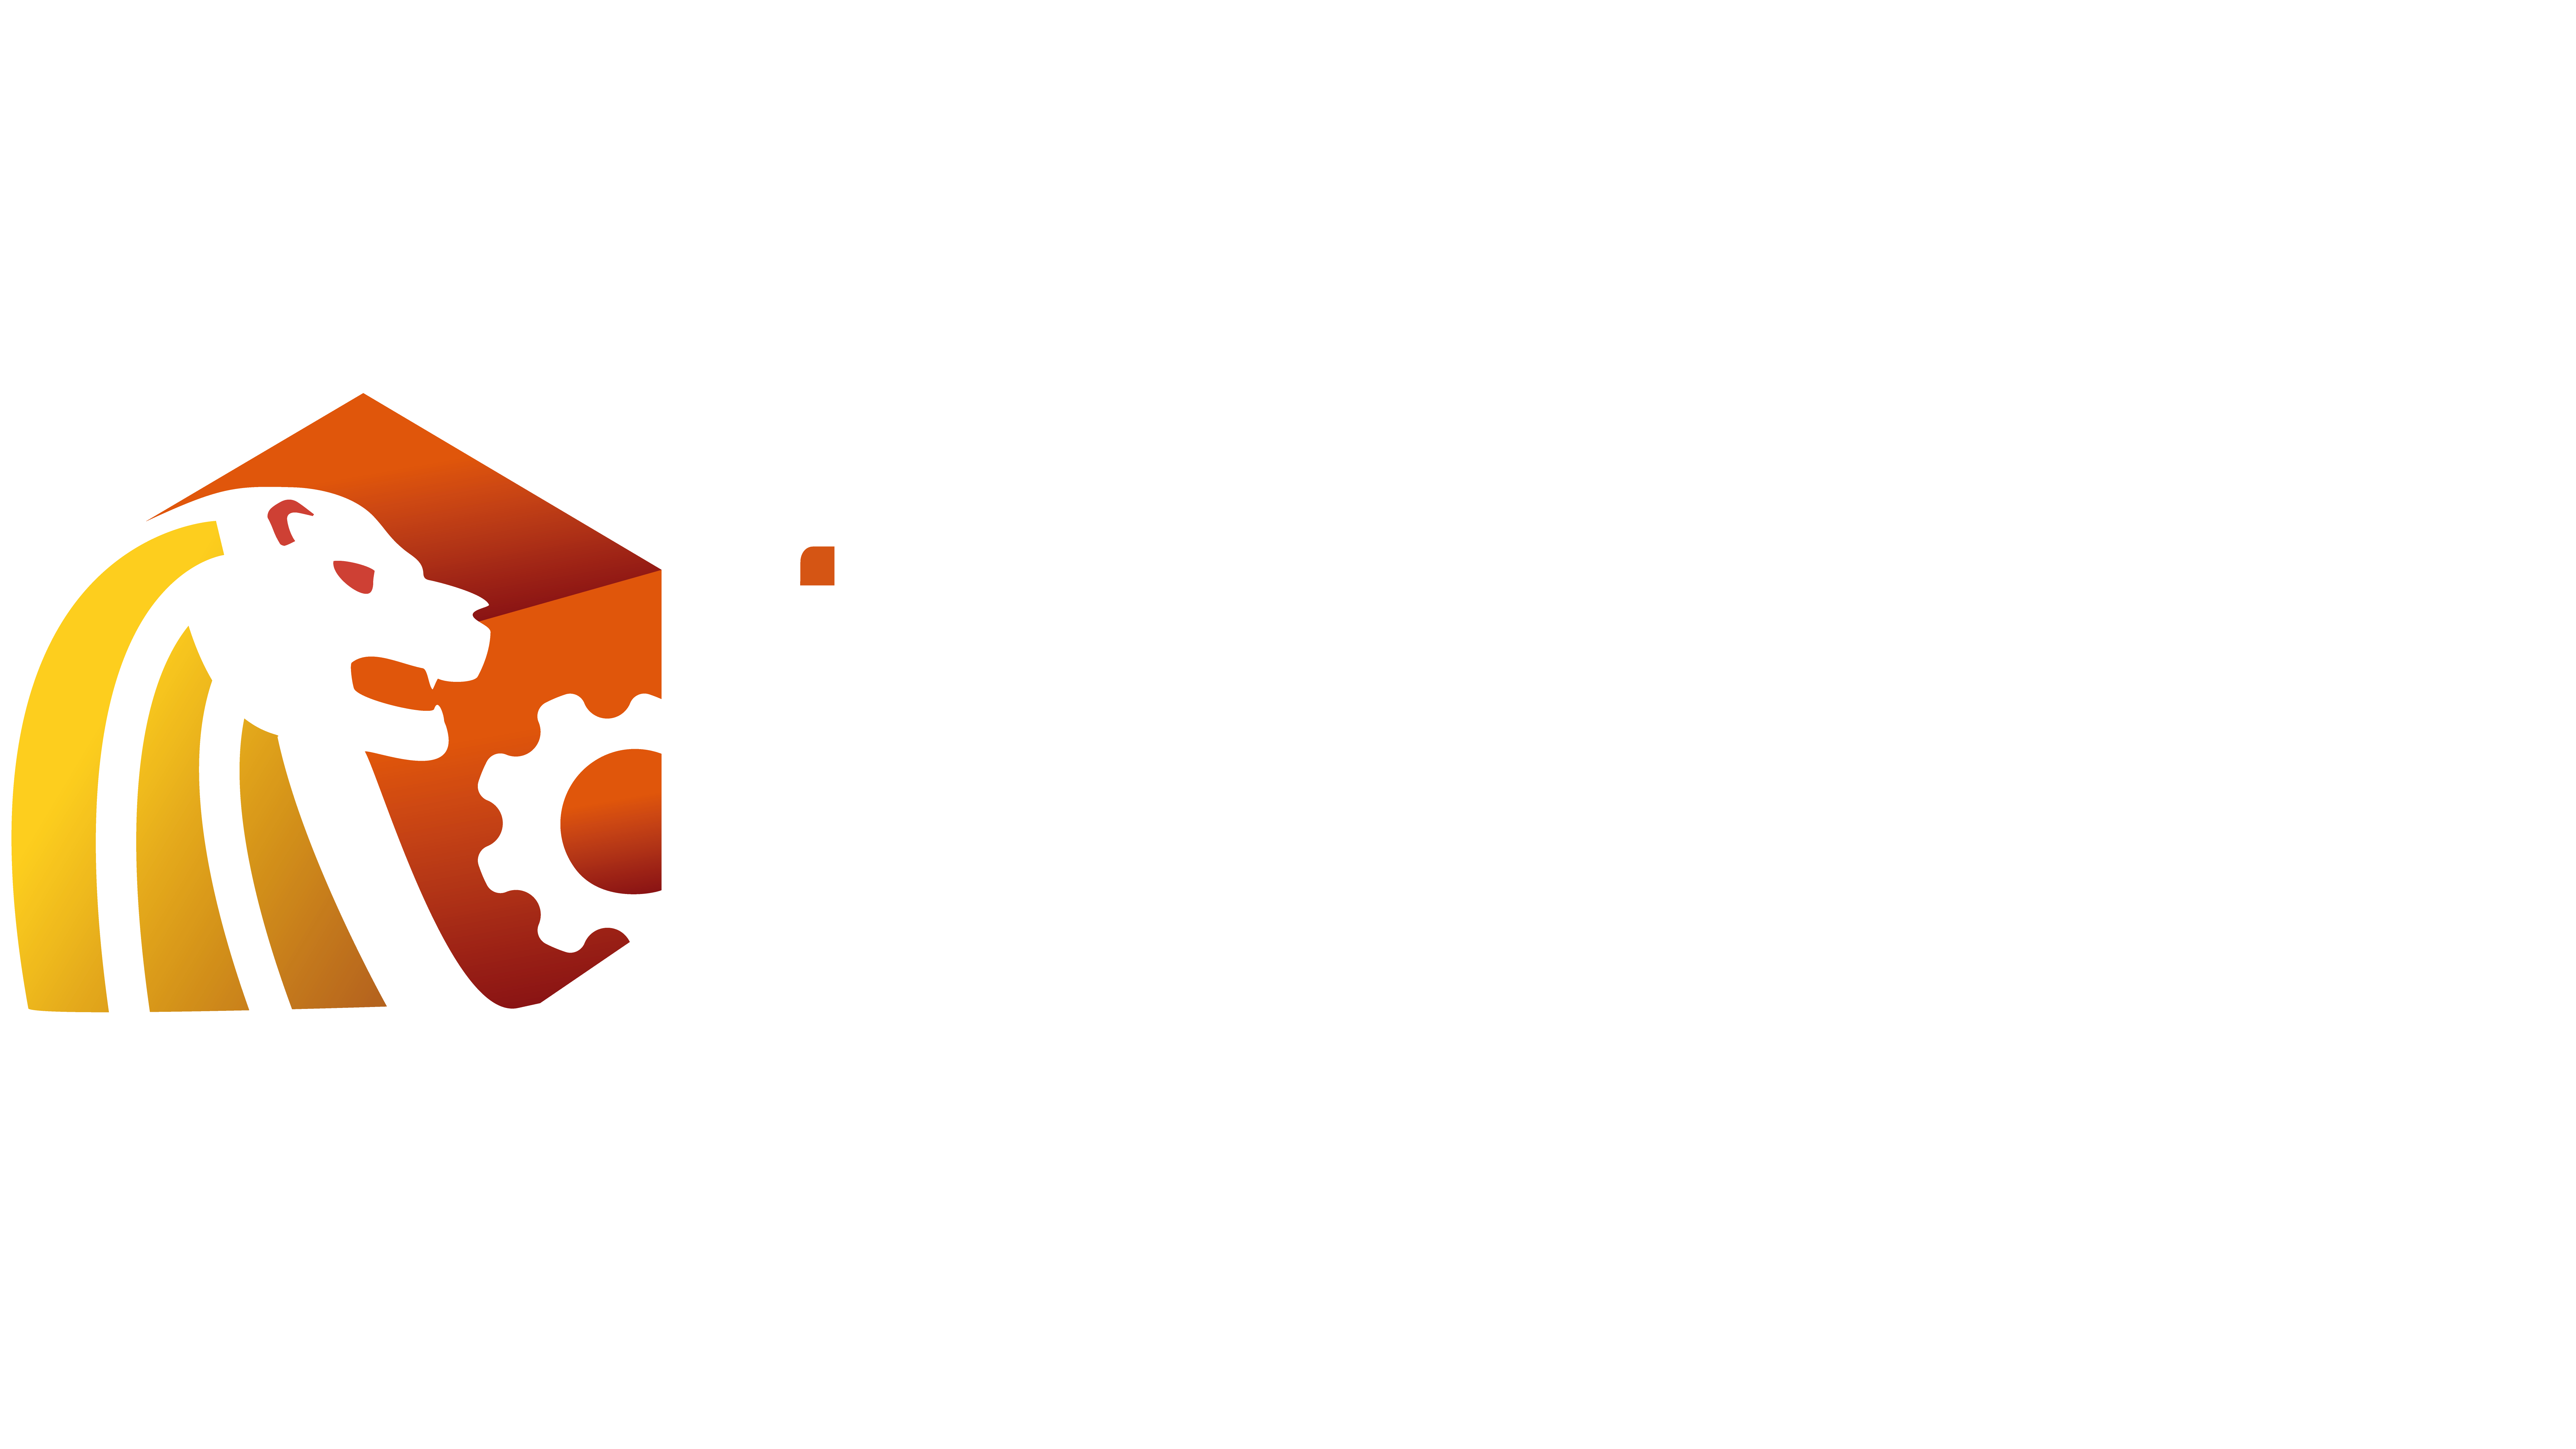 Institute of Industrial Design